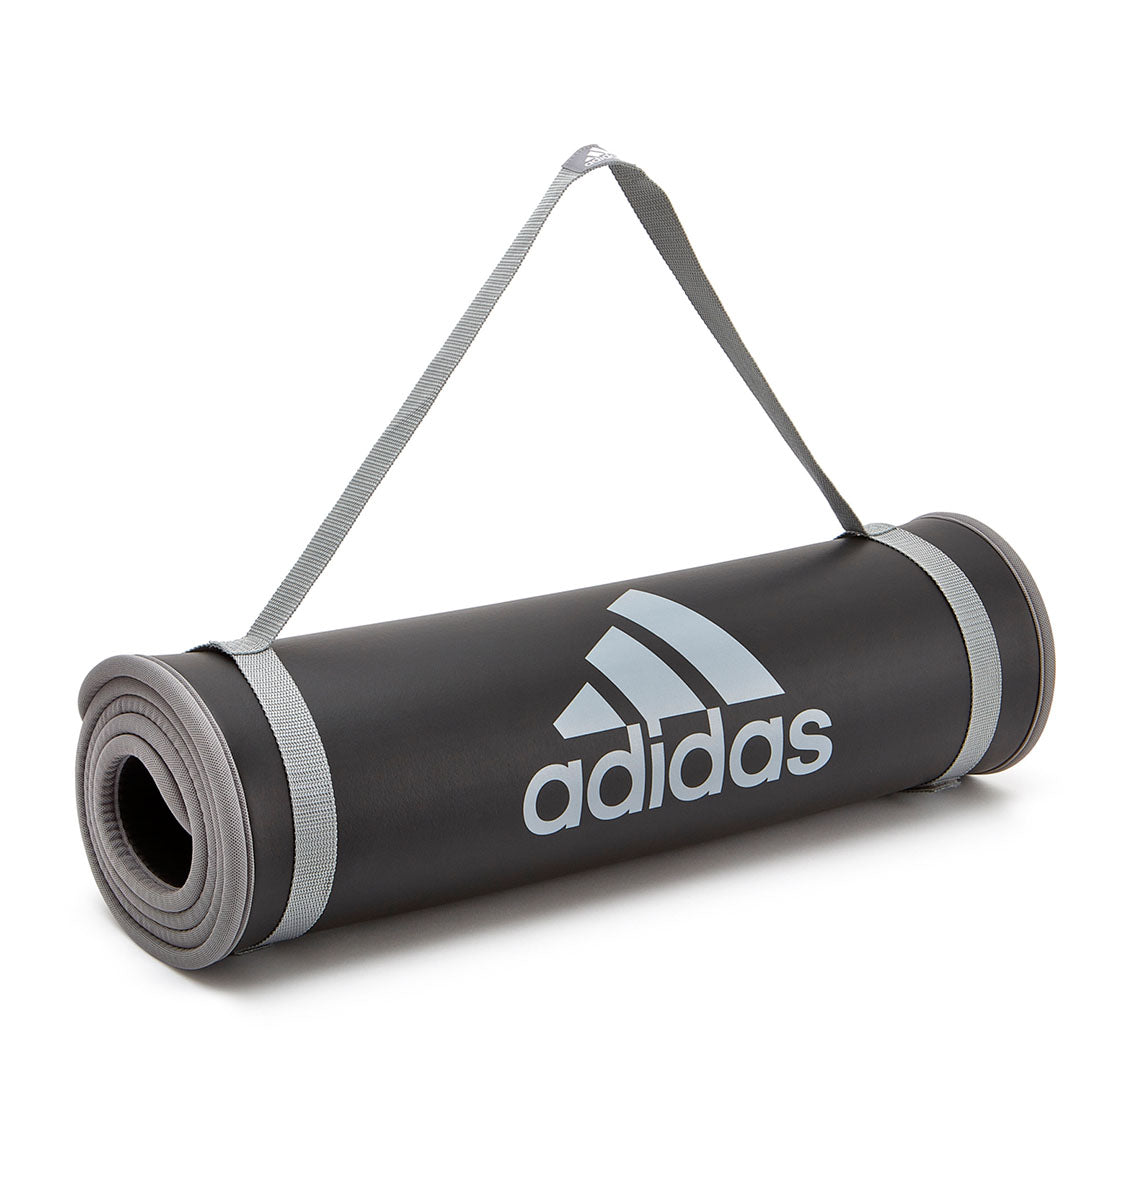 adidas Training Mat - Black/Grey - 6